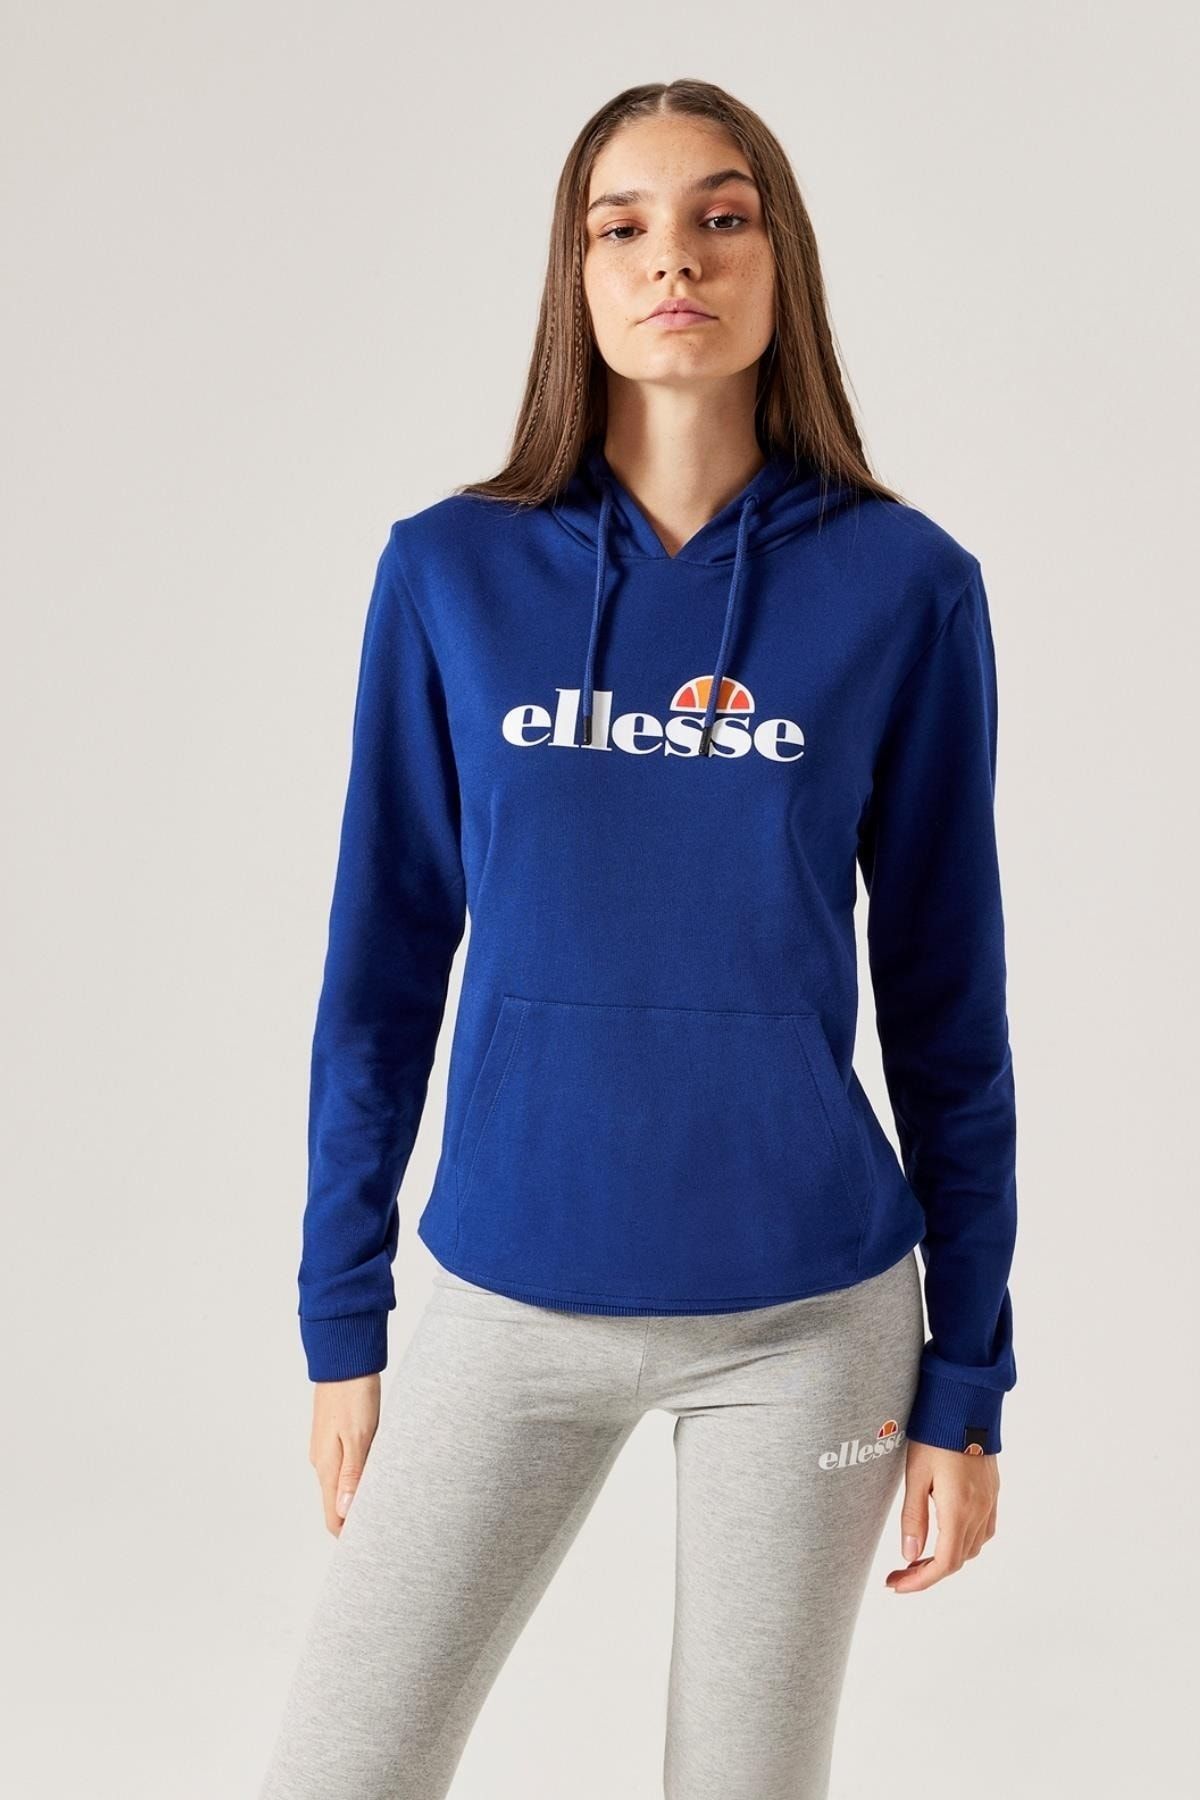 Ellesse Kadın Kapüşonlu Sweatshirt F021-nv